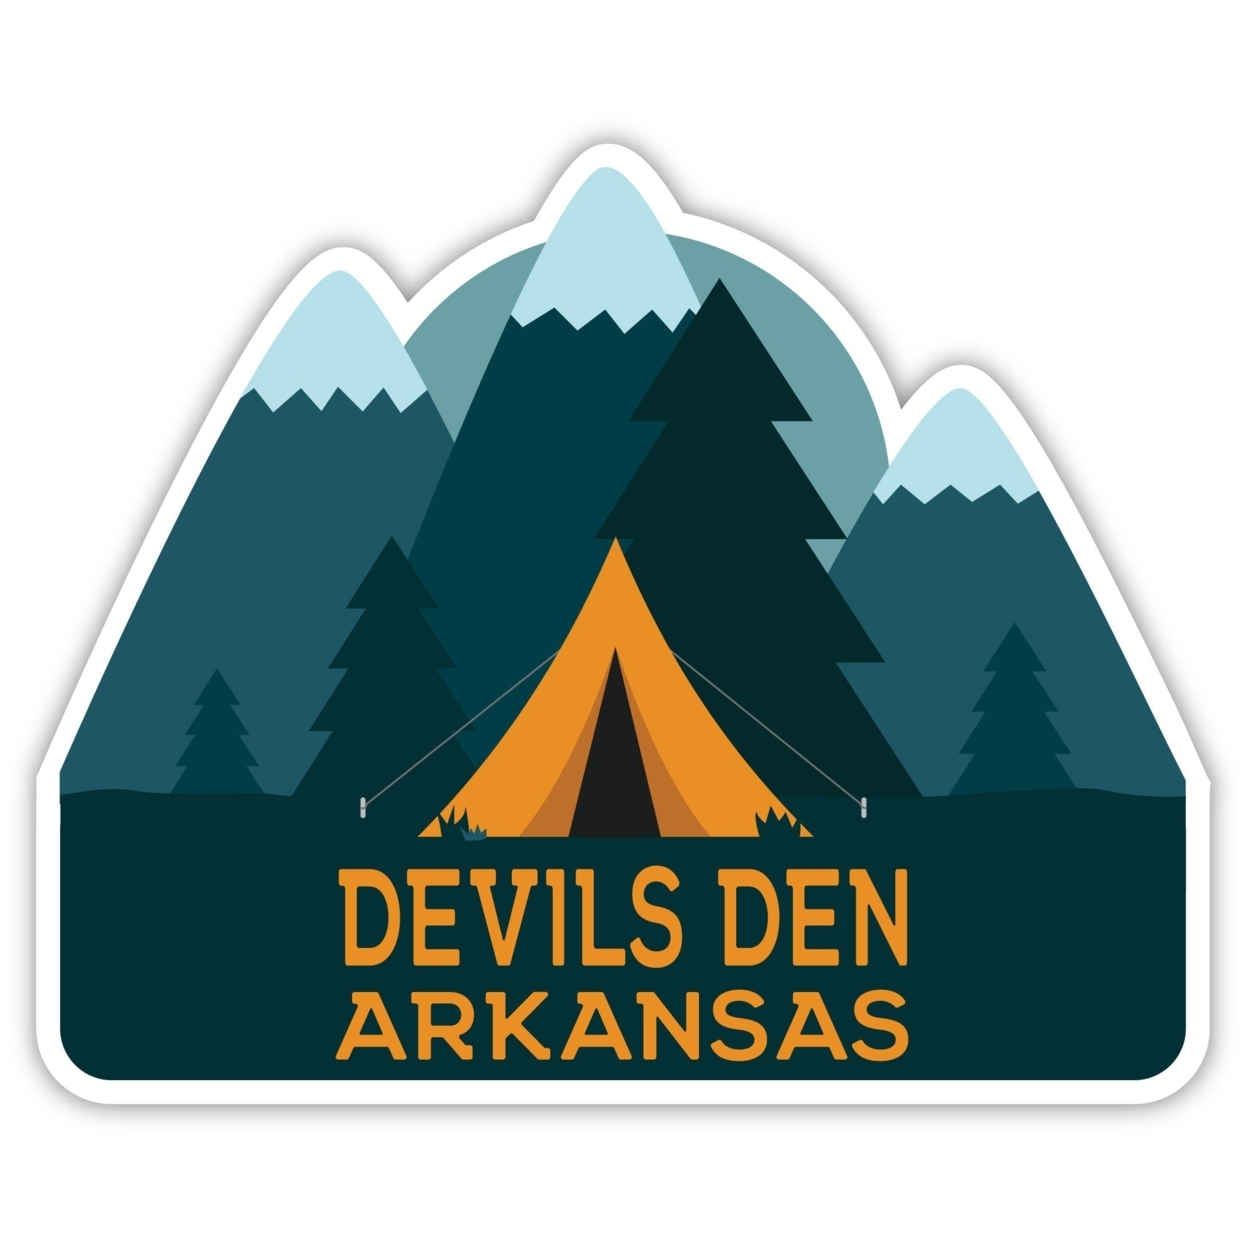 Devils Den Arkansas Souvenir Decorative Stickers (Choose Theme And Size) - 4-Pack, 6-Inch, Tent